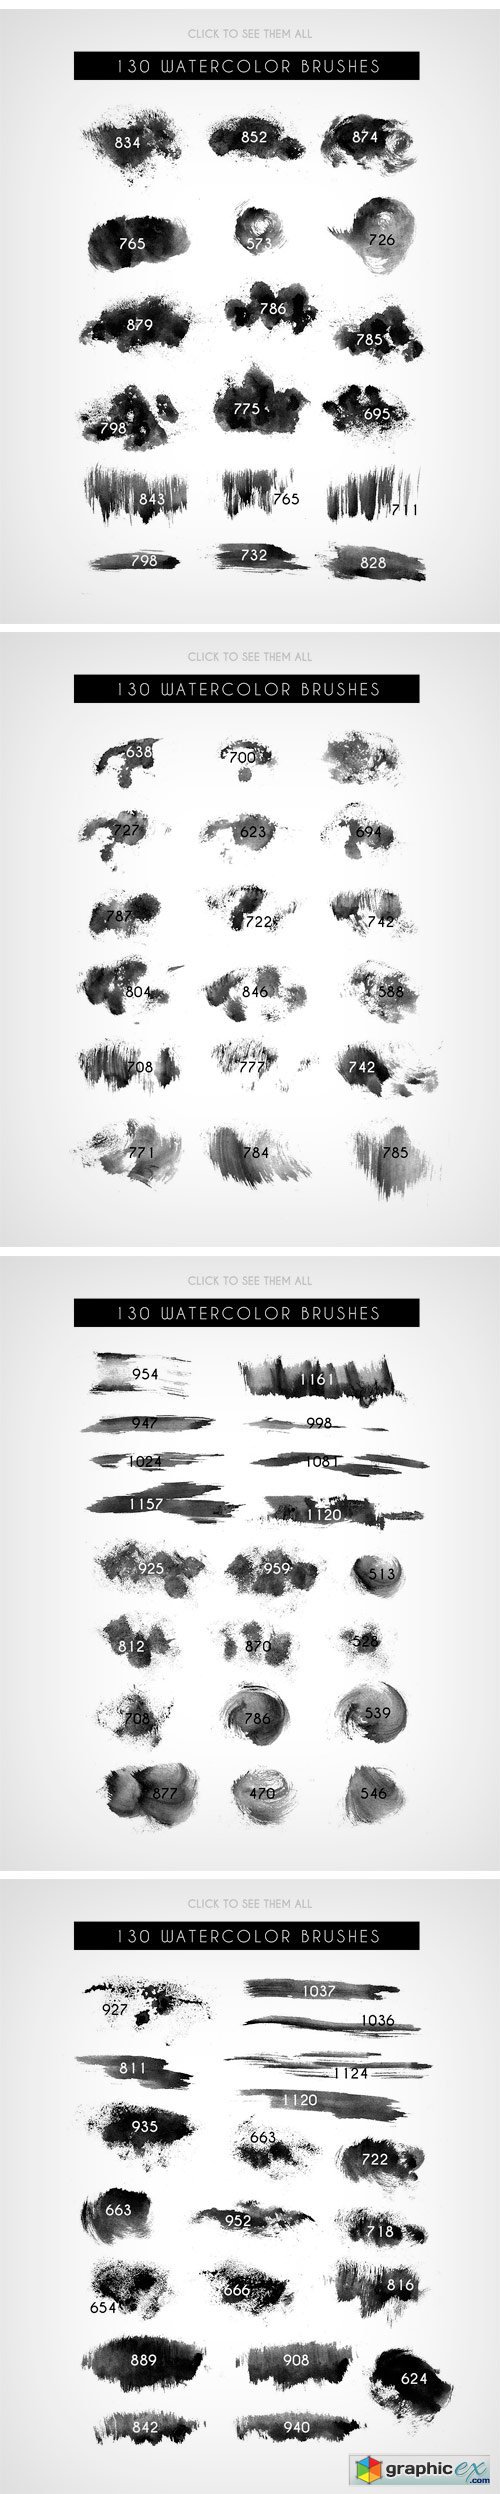 130 Sponge Watercolor Brushes